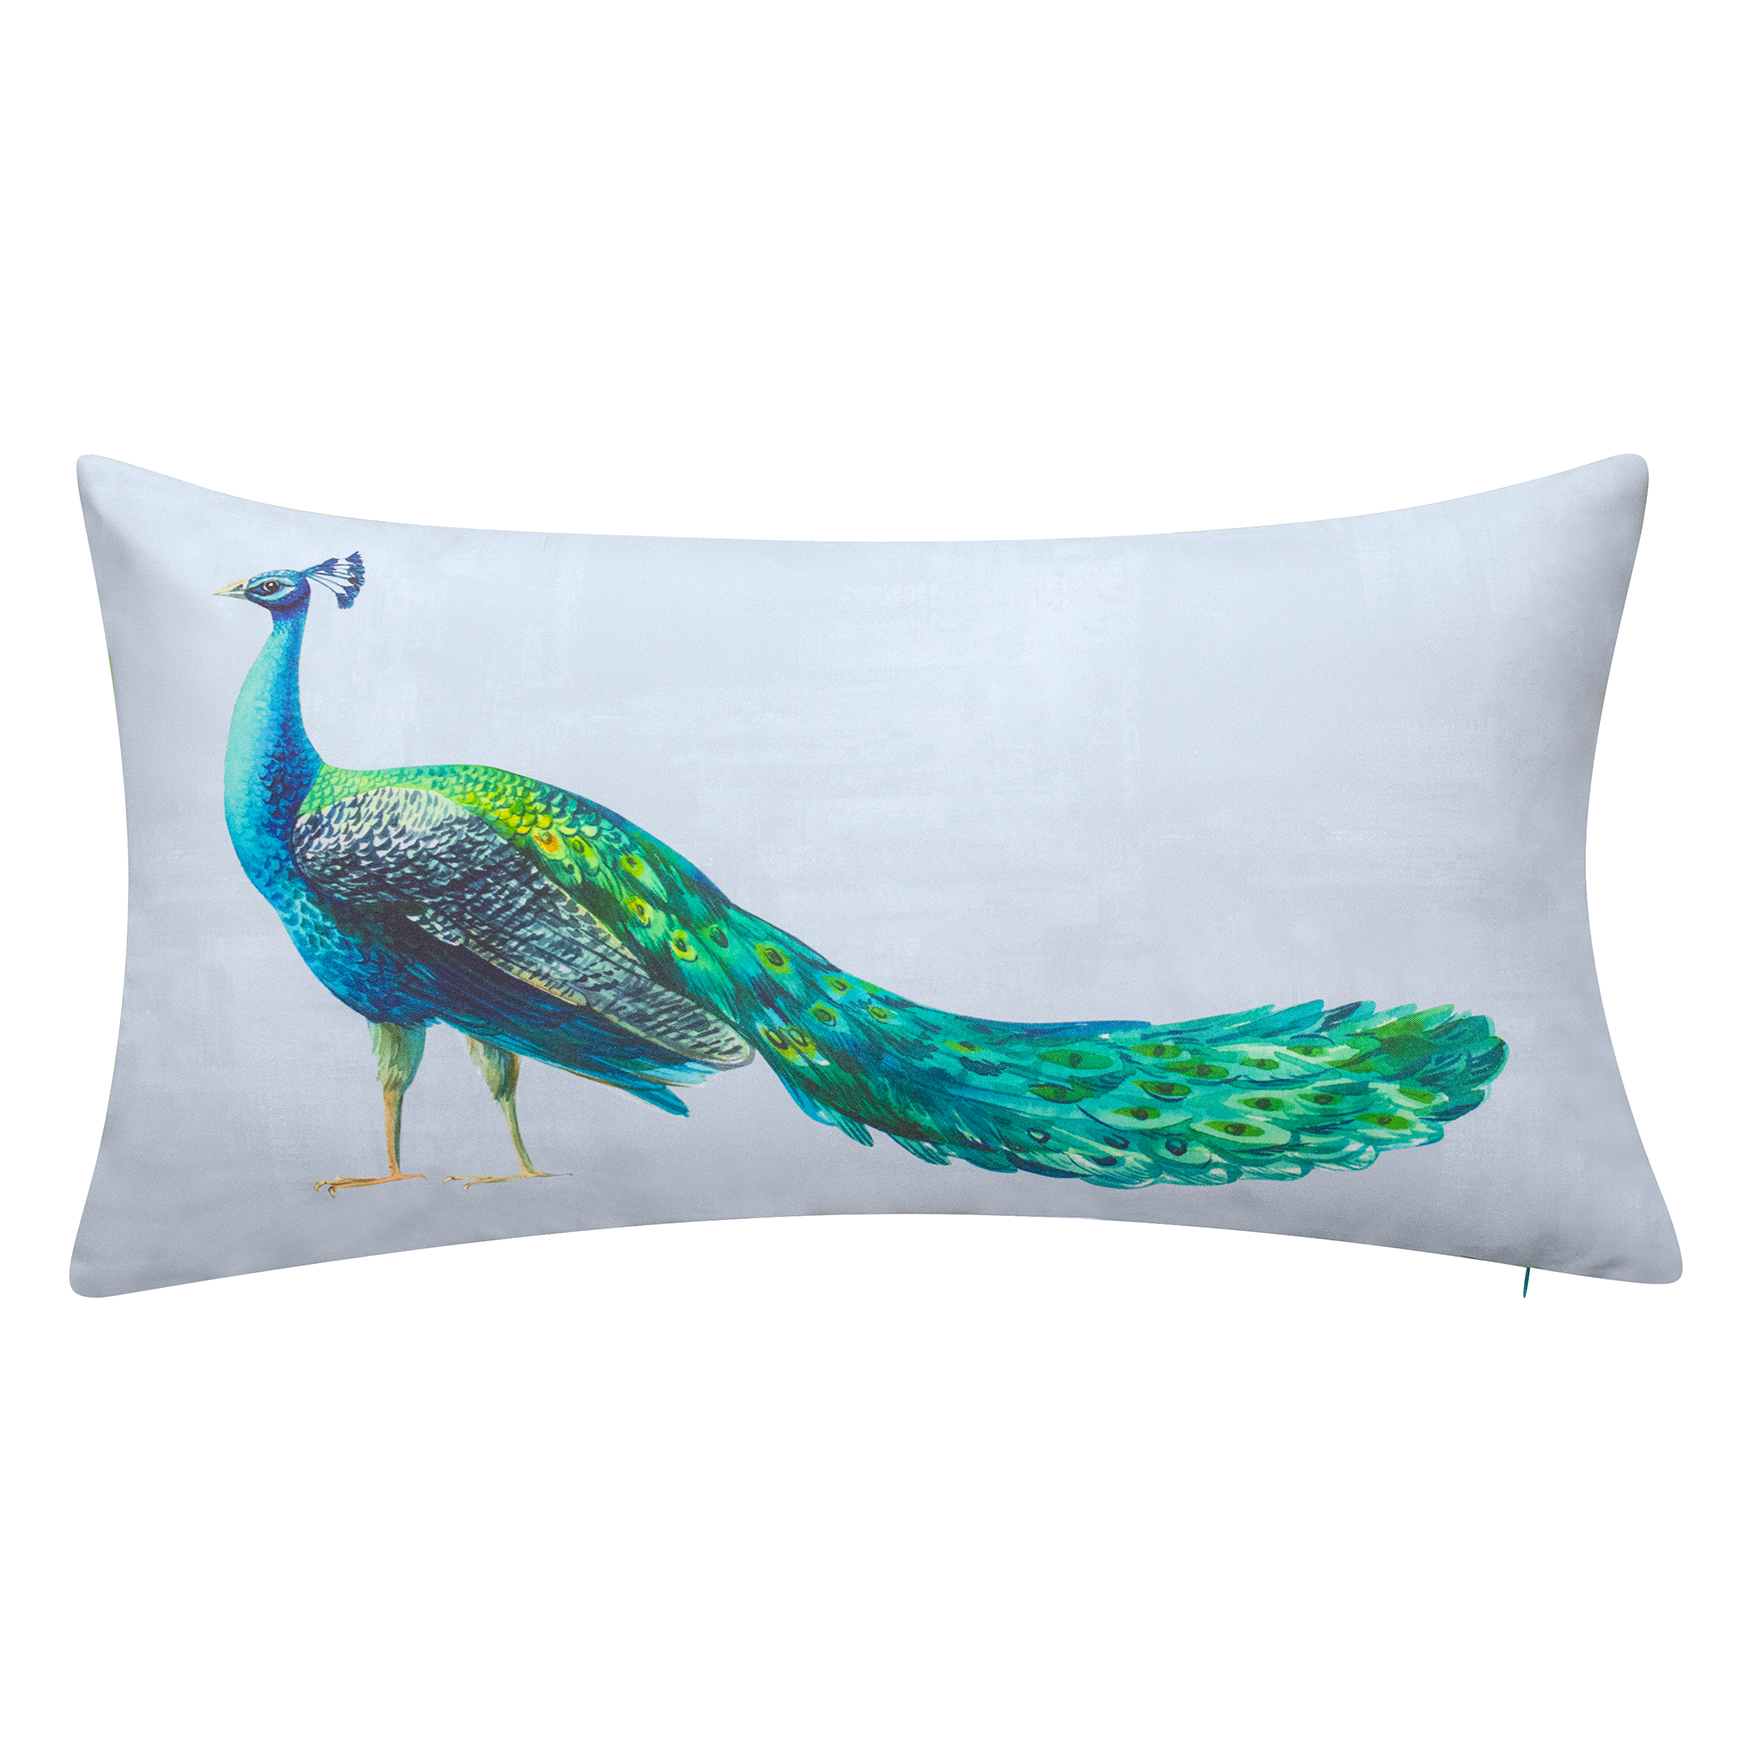 Indoor & Outdoor Dramatic Peacock Lumbar Decorative Pillow, SKY MULTI